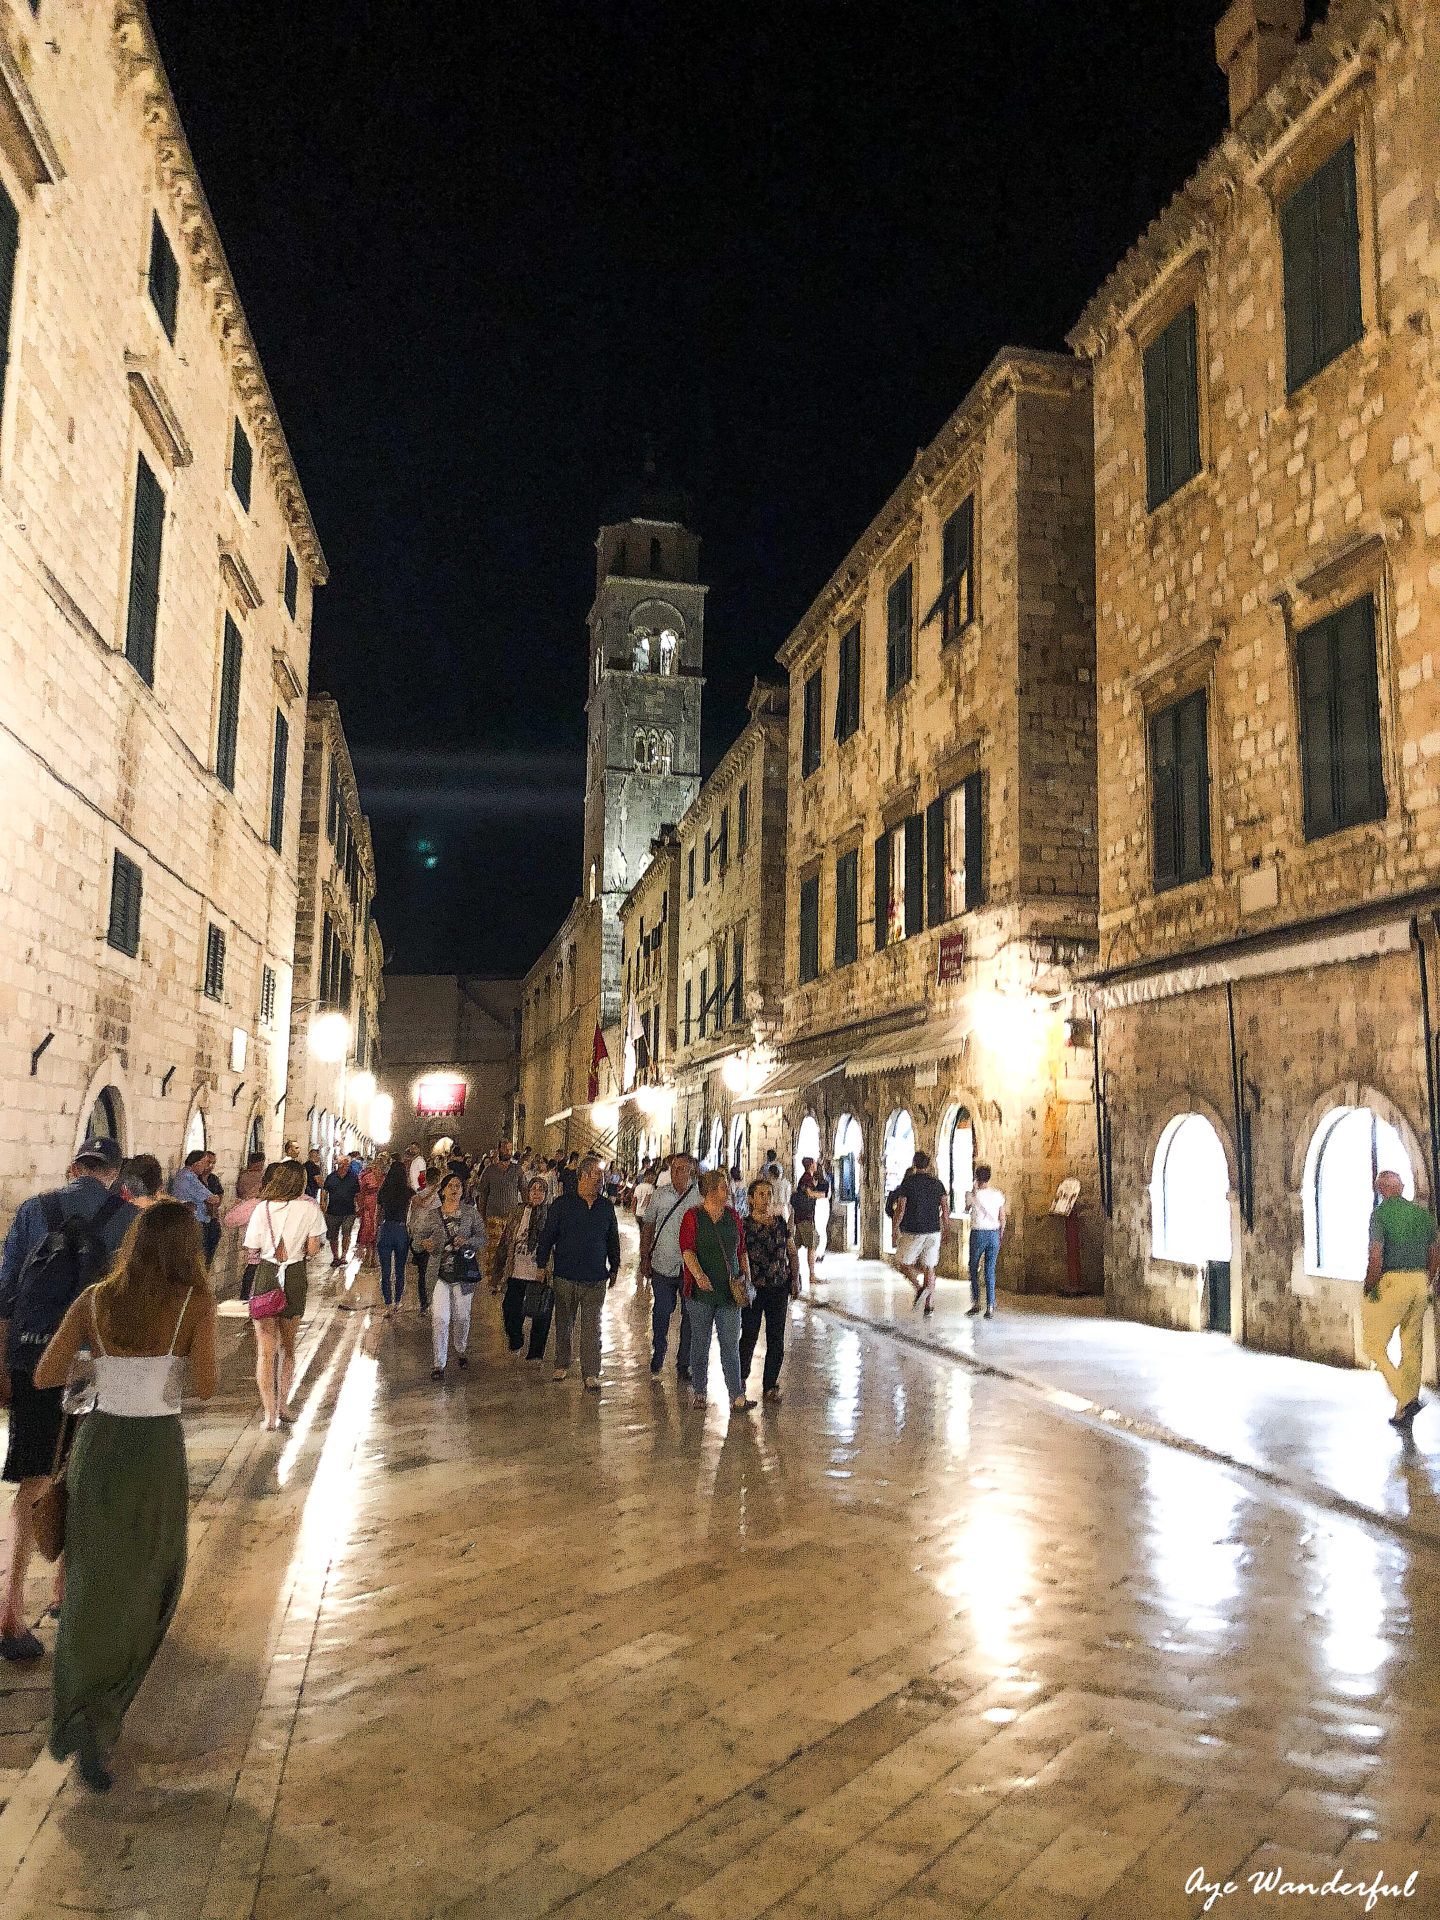 Stradun Dubrovnik at night